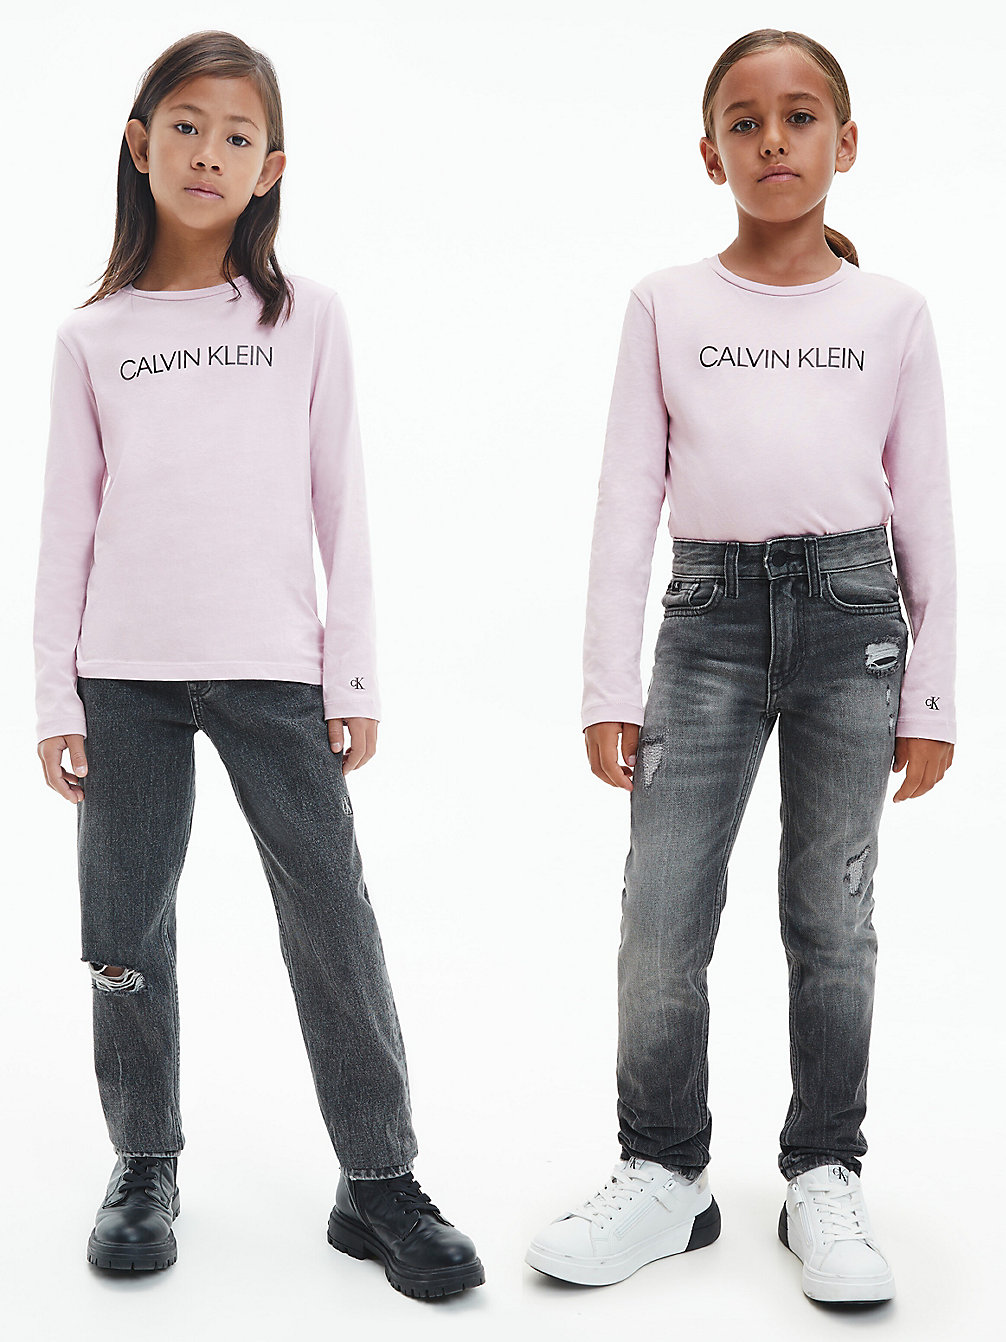 HAWAII ORCHID > Unisex T-Shirt Met Lange Mouwen > undefined kids unisex - Calvin Klein